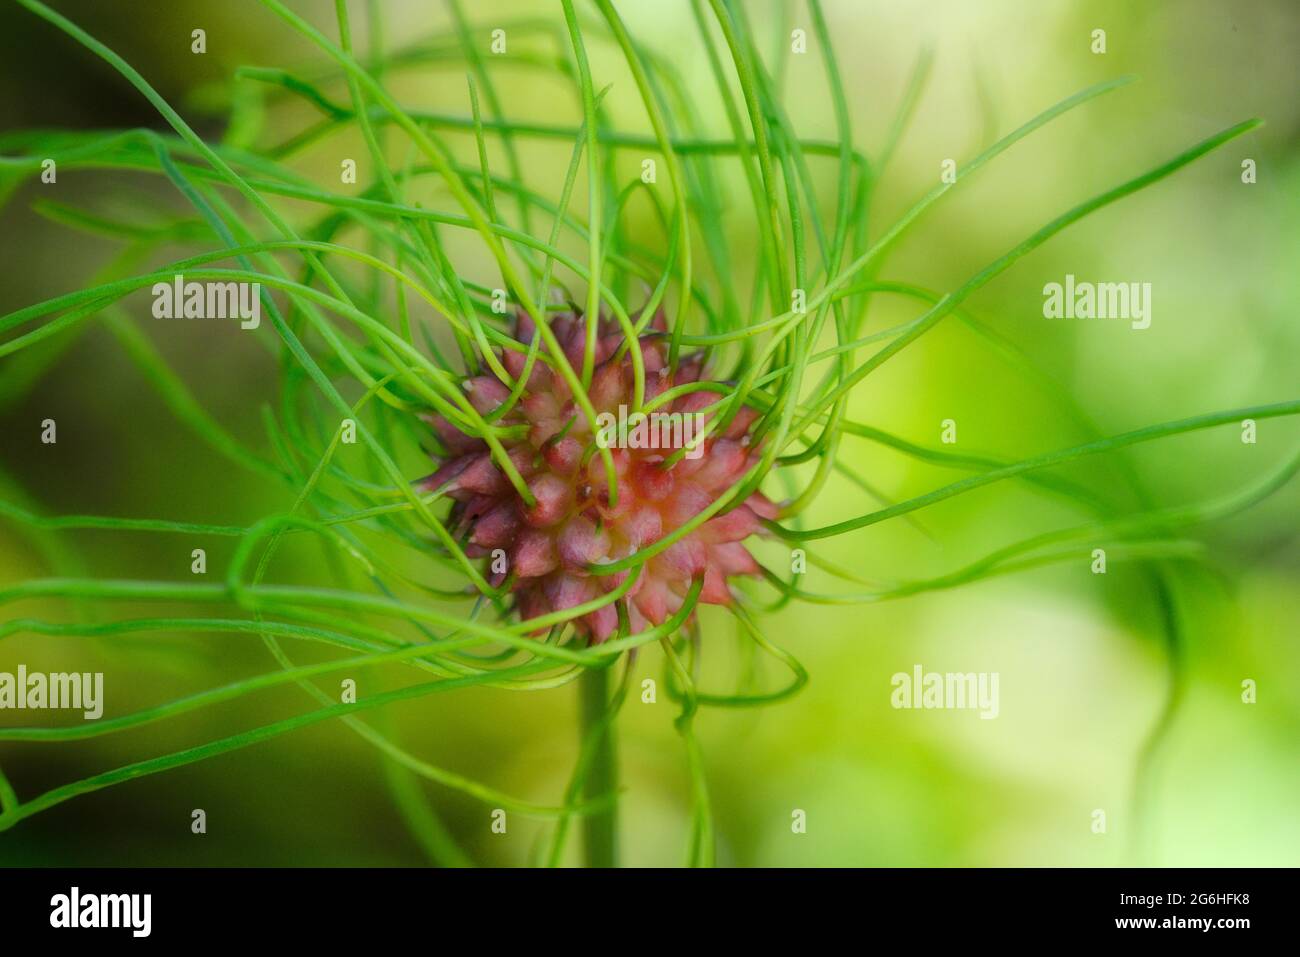 Allium vineale. Wild garlic bulblet. Bulbil, bulbel, England, UK Stock Photo